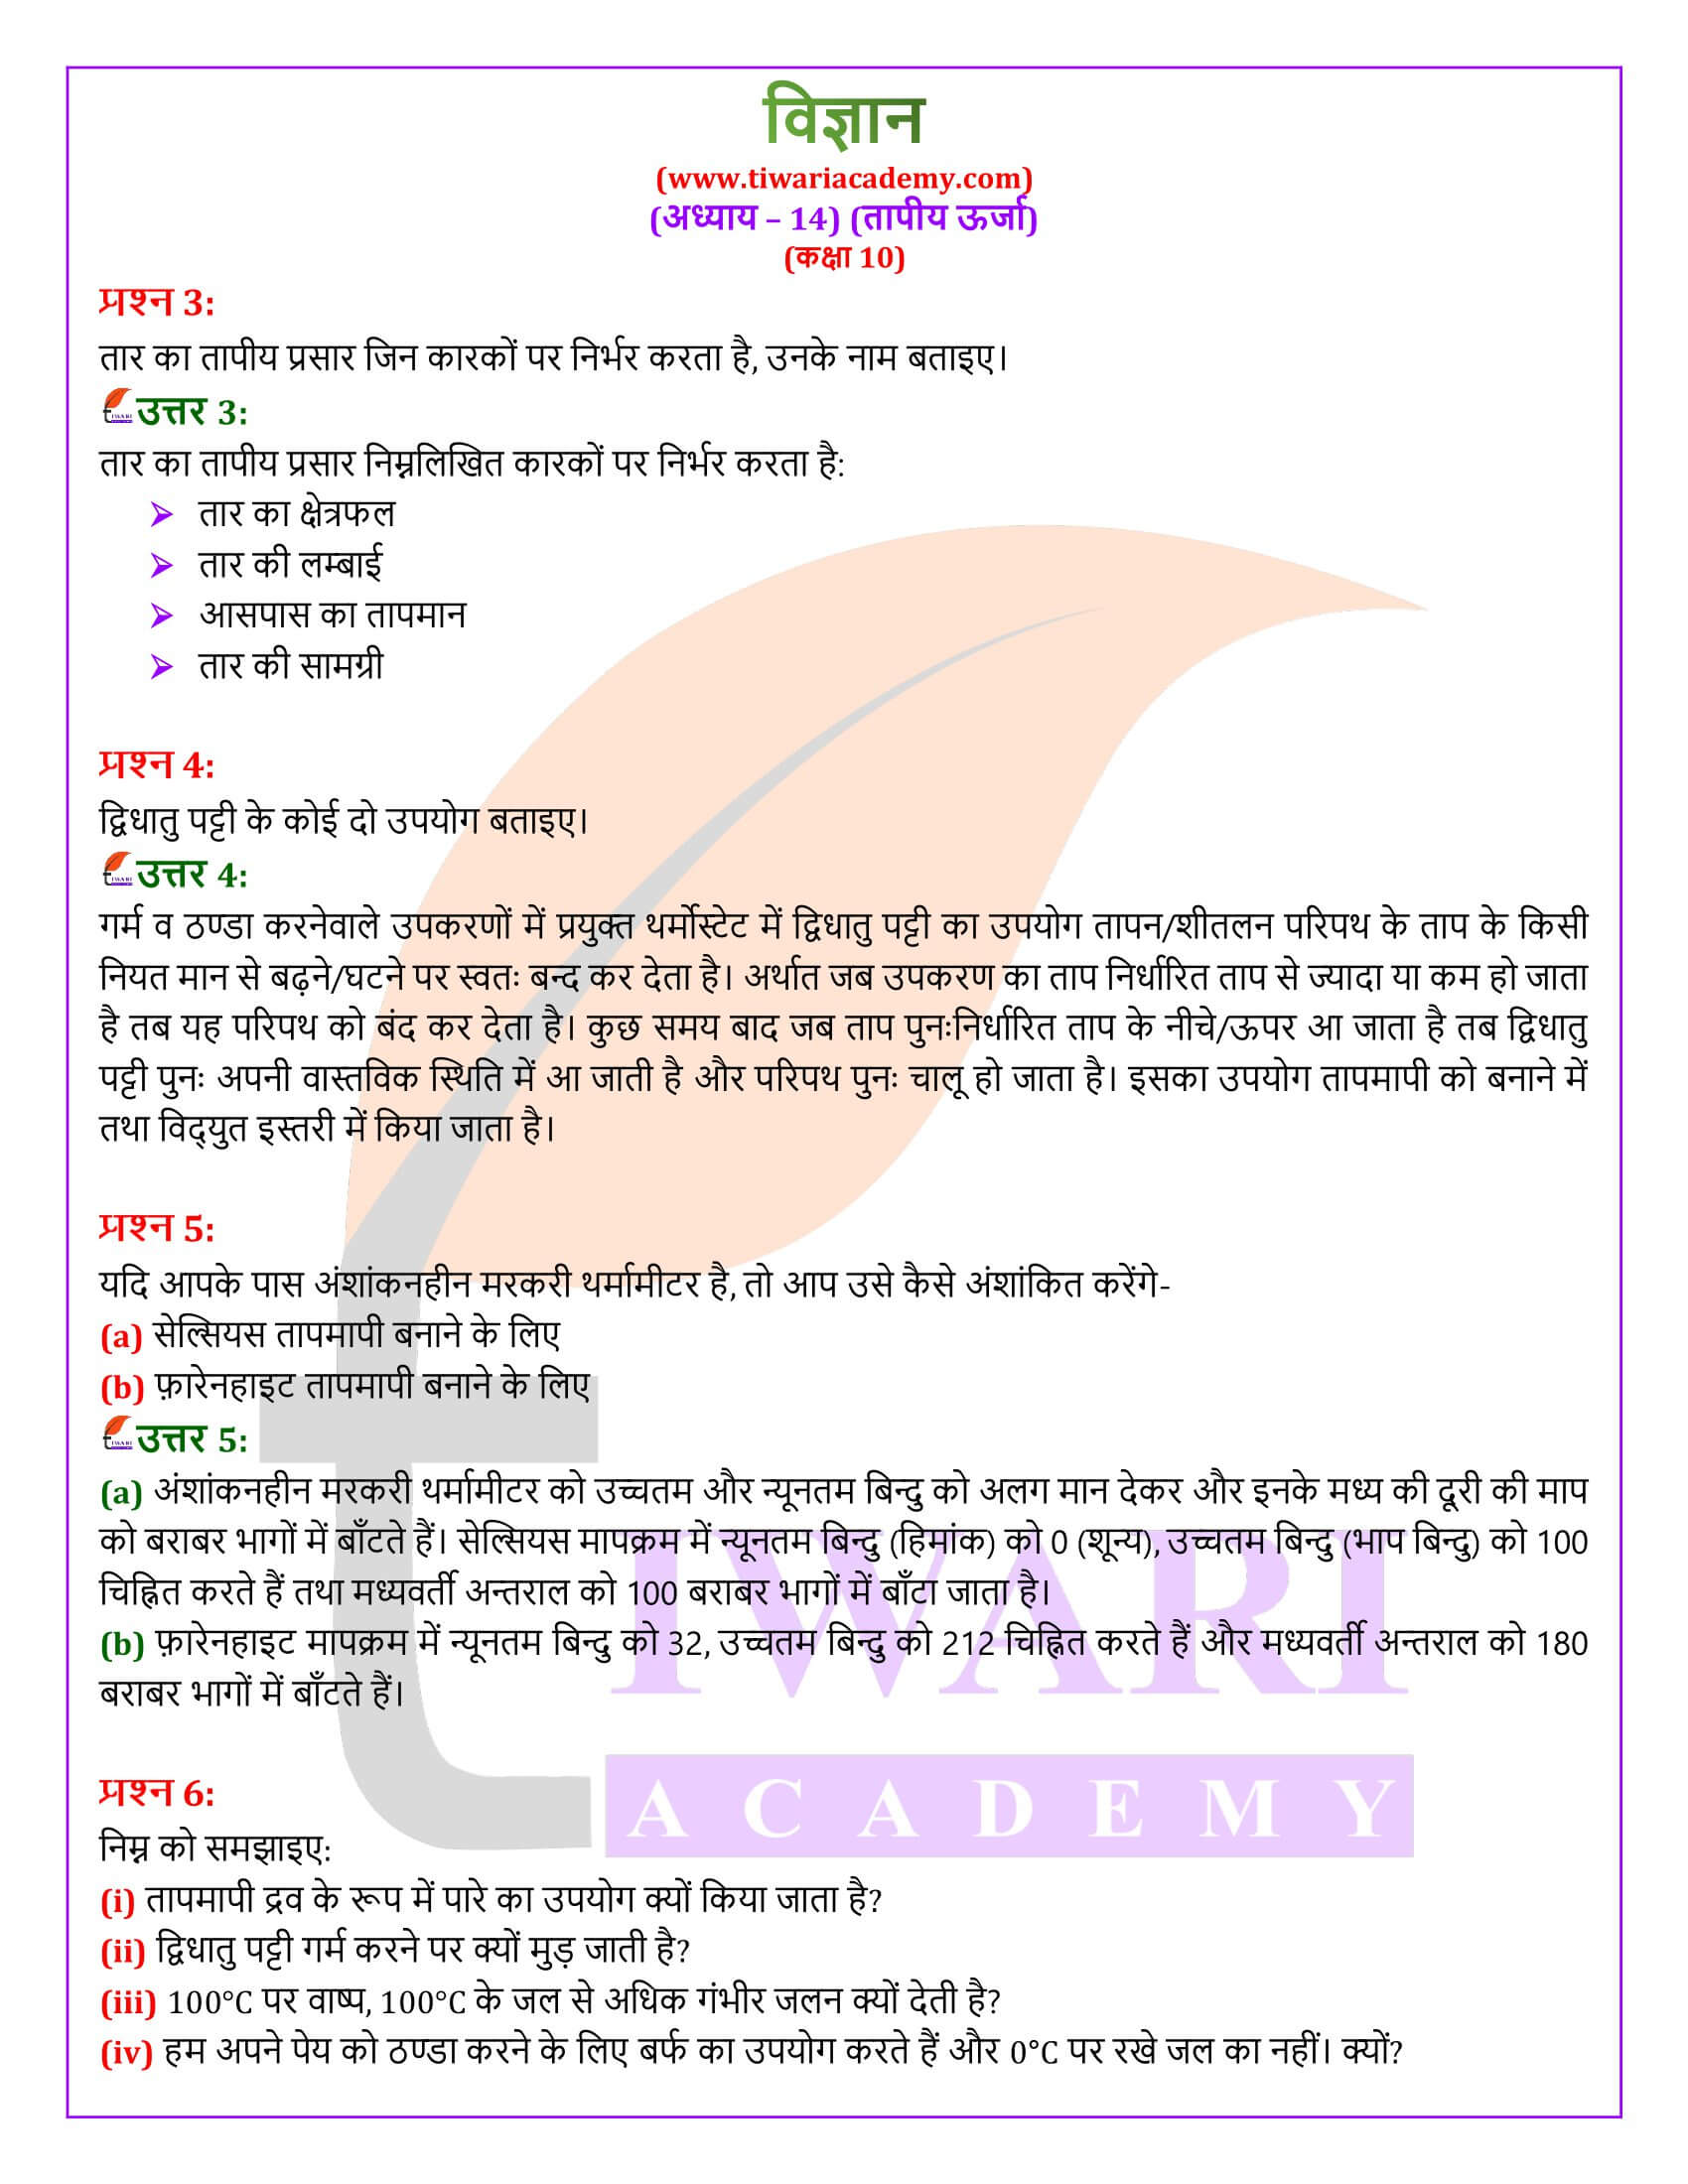 NIOS के लिए कक्षा 10 विज्ञान अध्याय 14 के हल हिंदी में